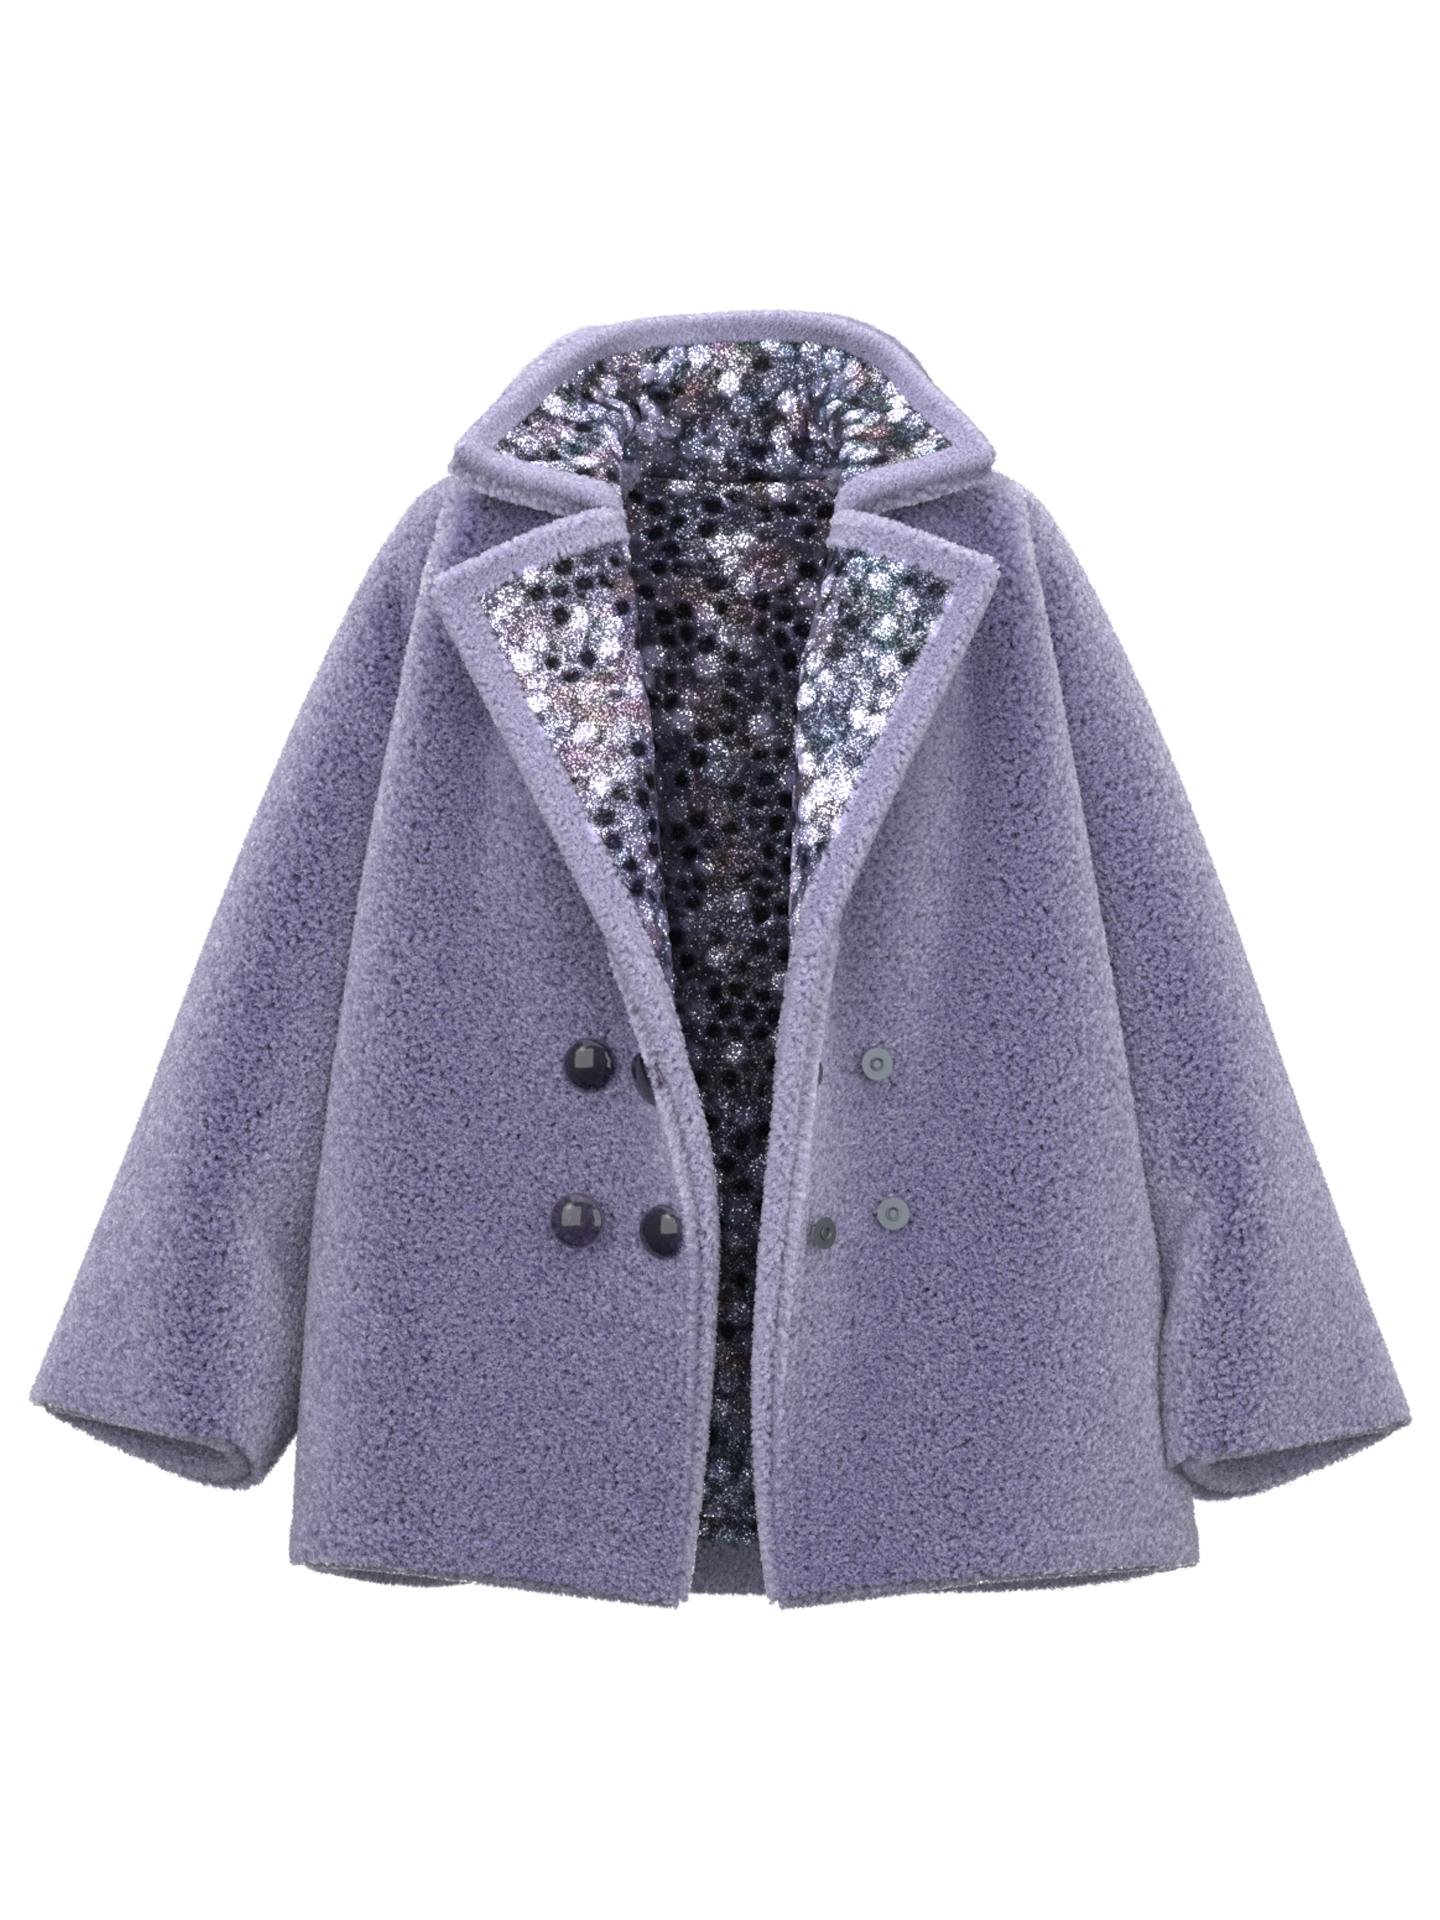 Fur-tale Purple Coat by LOFEDO